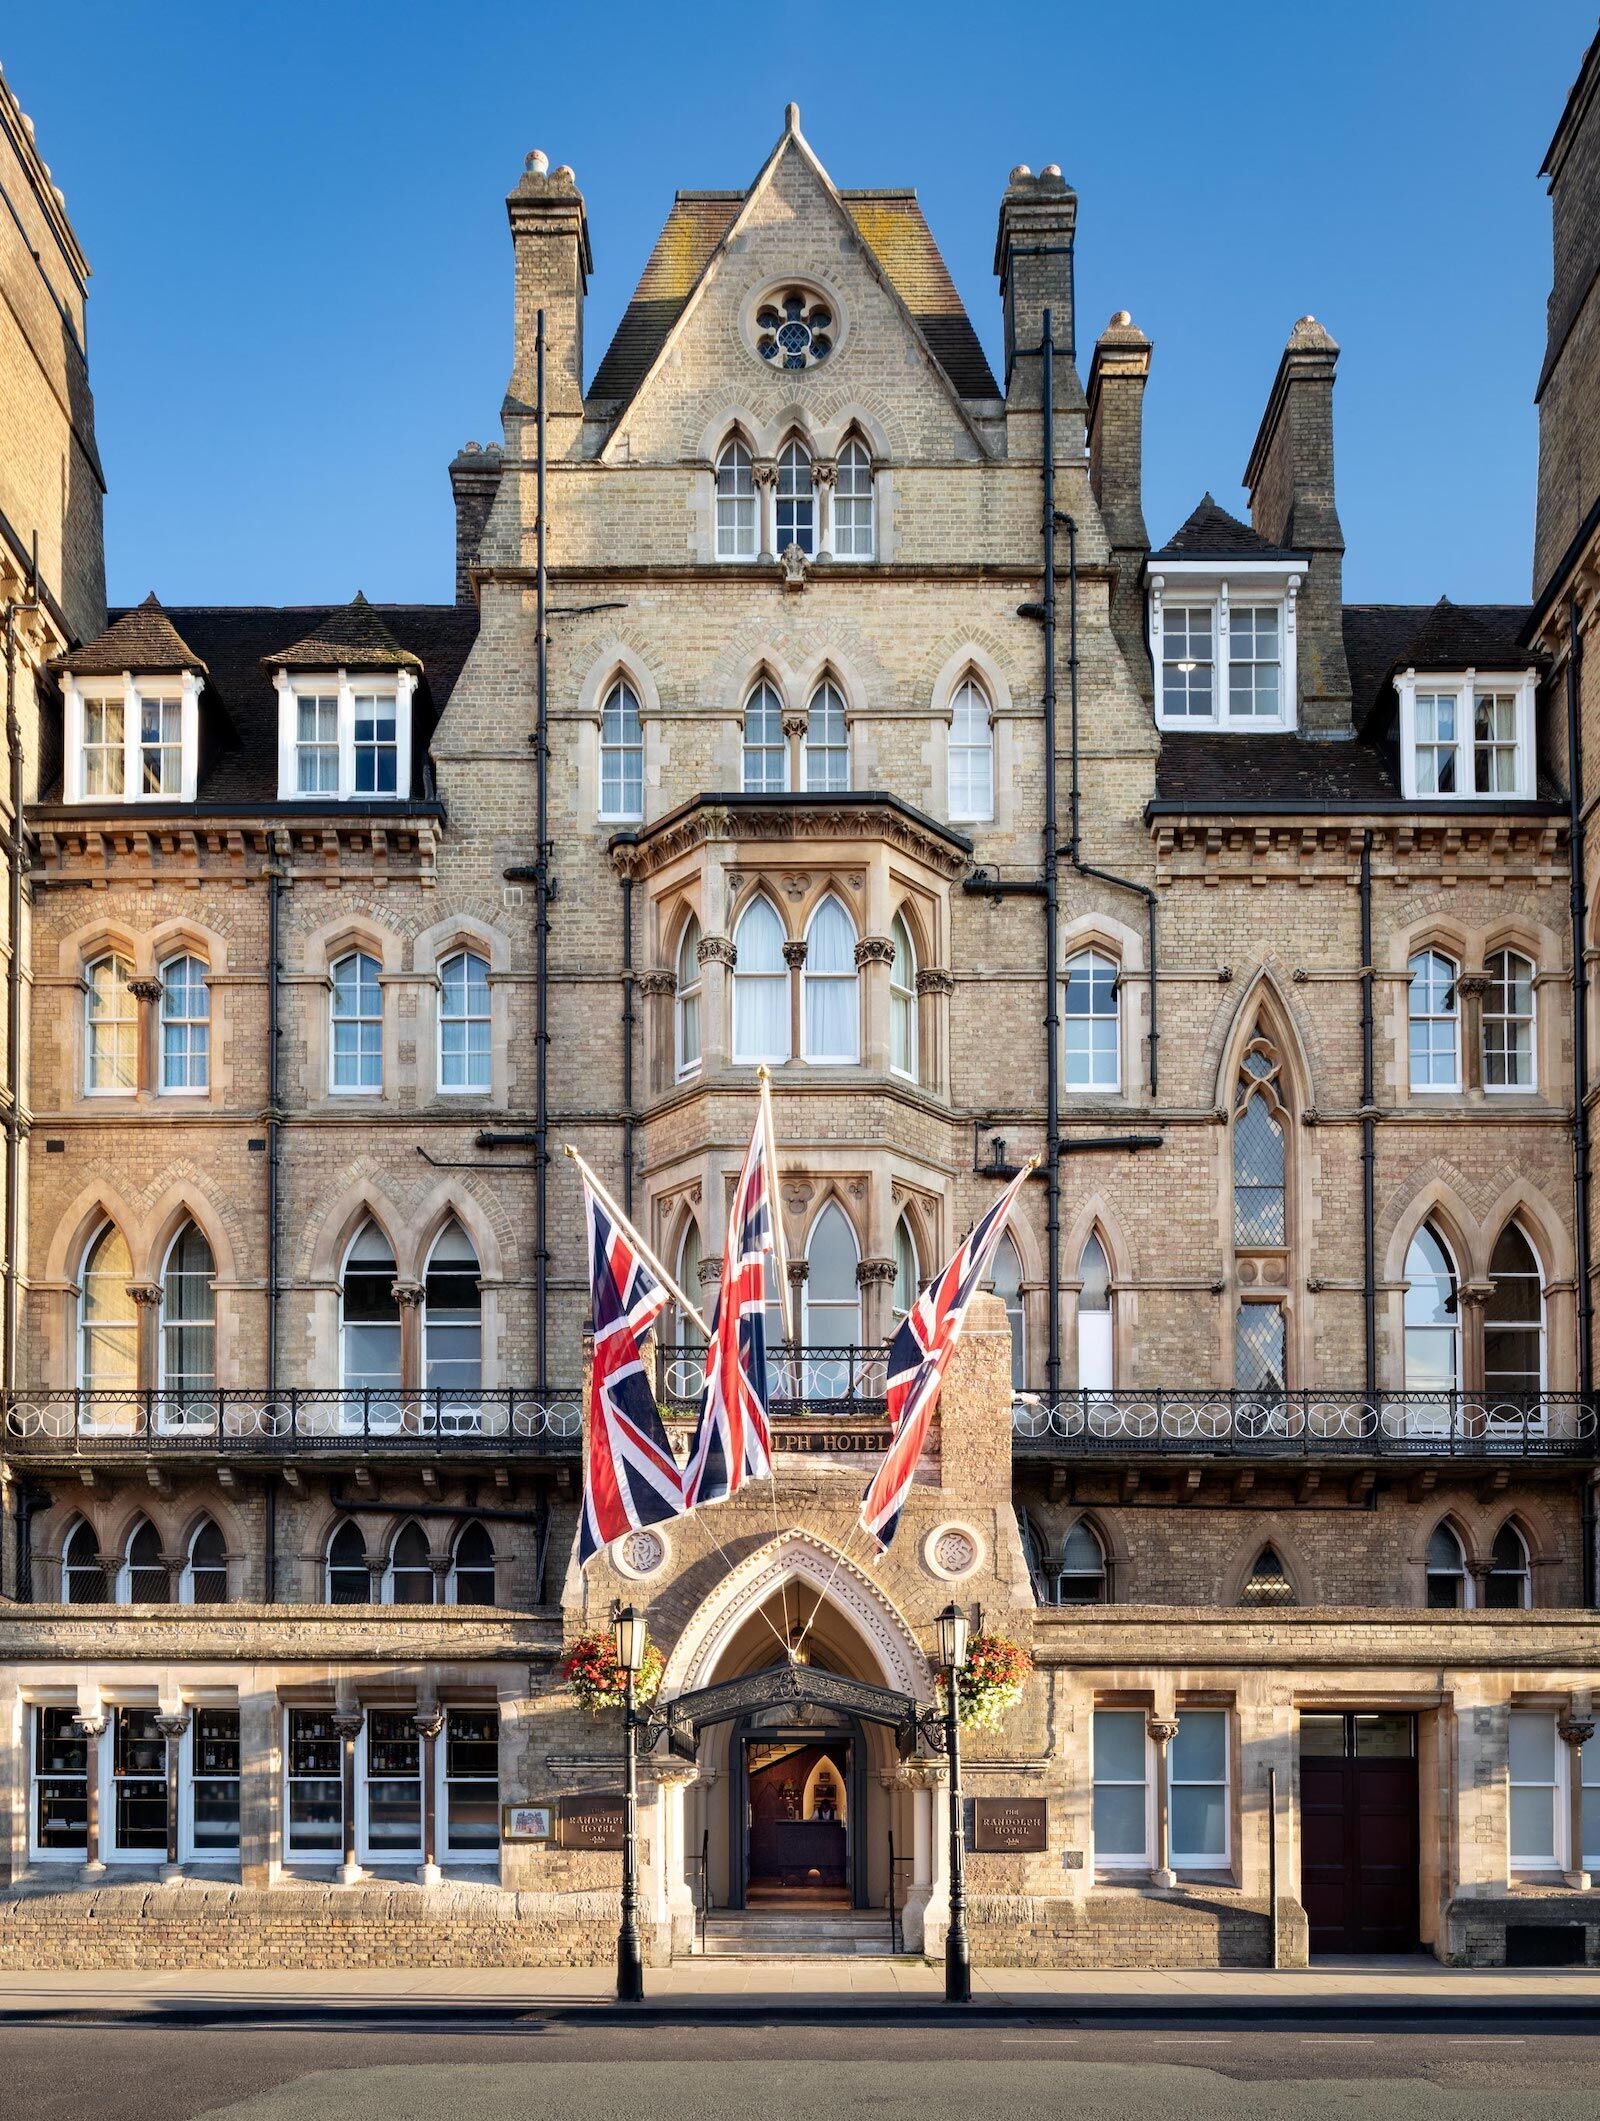 The facade of The Randolph Hotel, Oxford, England